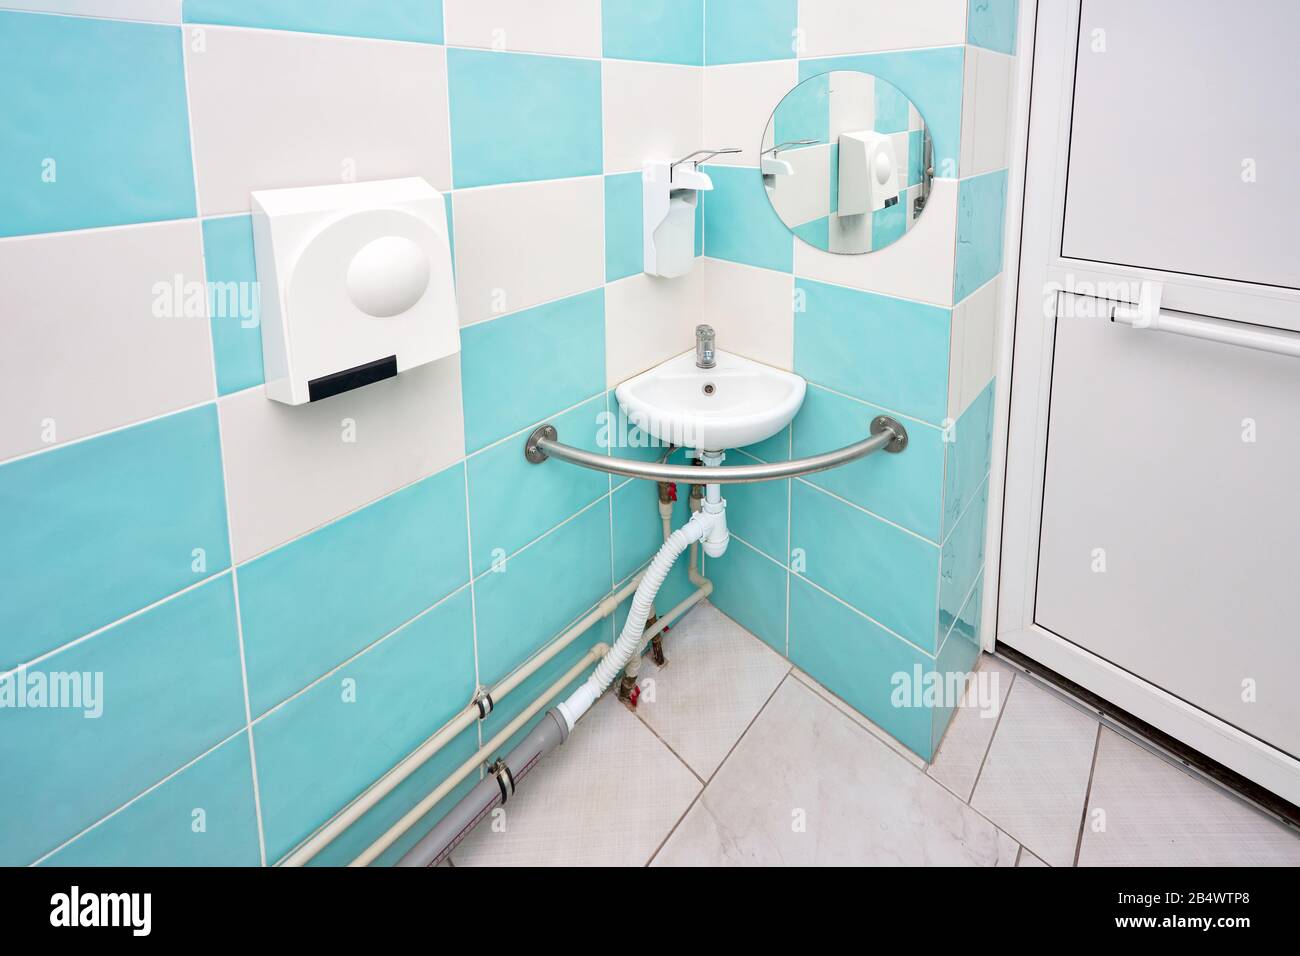 Intérieur de toilettes spécialement adaptées de salle de bains avec design  convivial pour les personnes handicapées, handicapés ou invalides en  fauteuil roulant Photo Stock - Alamy